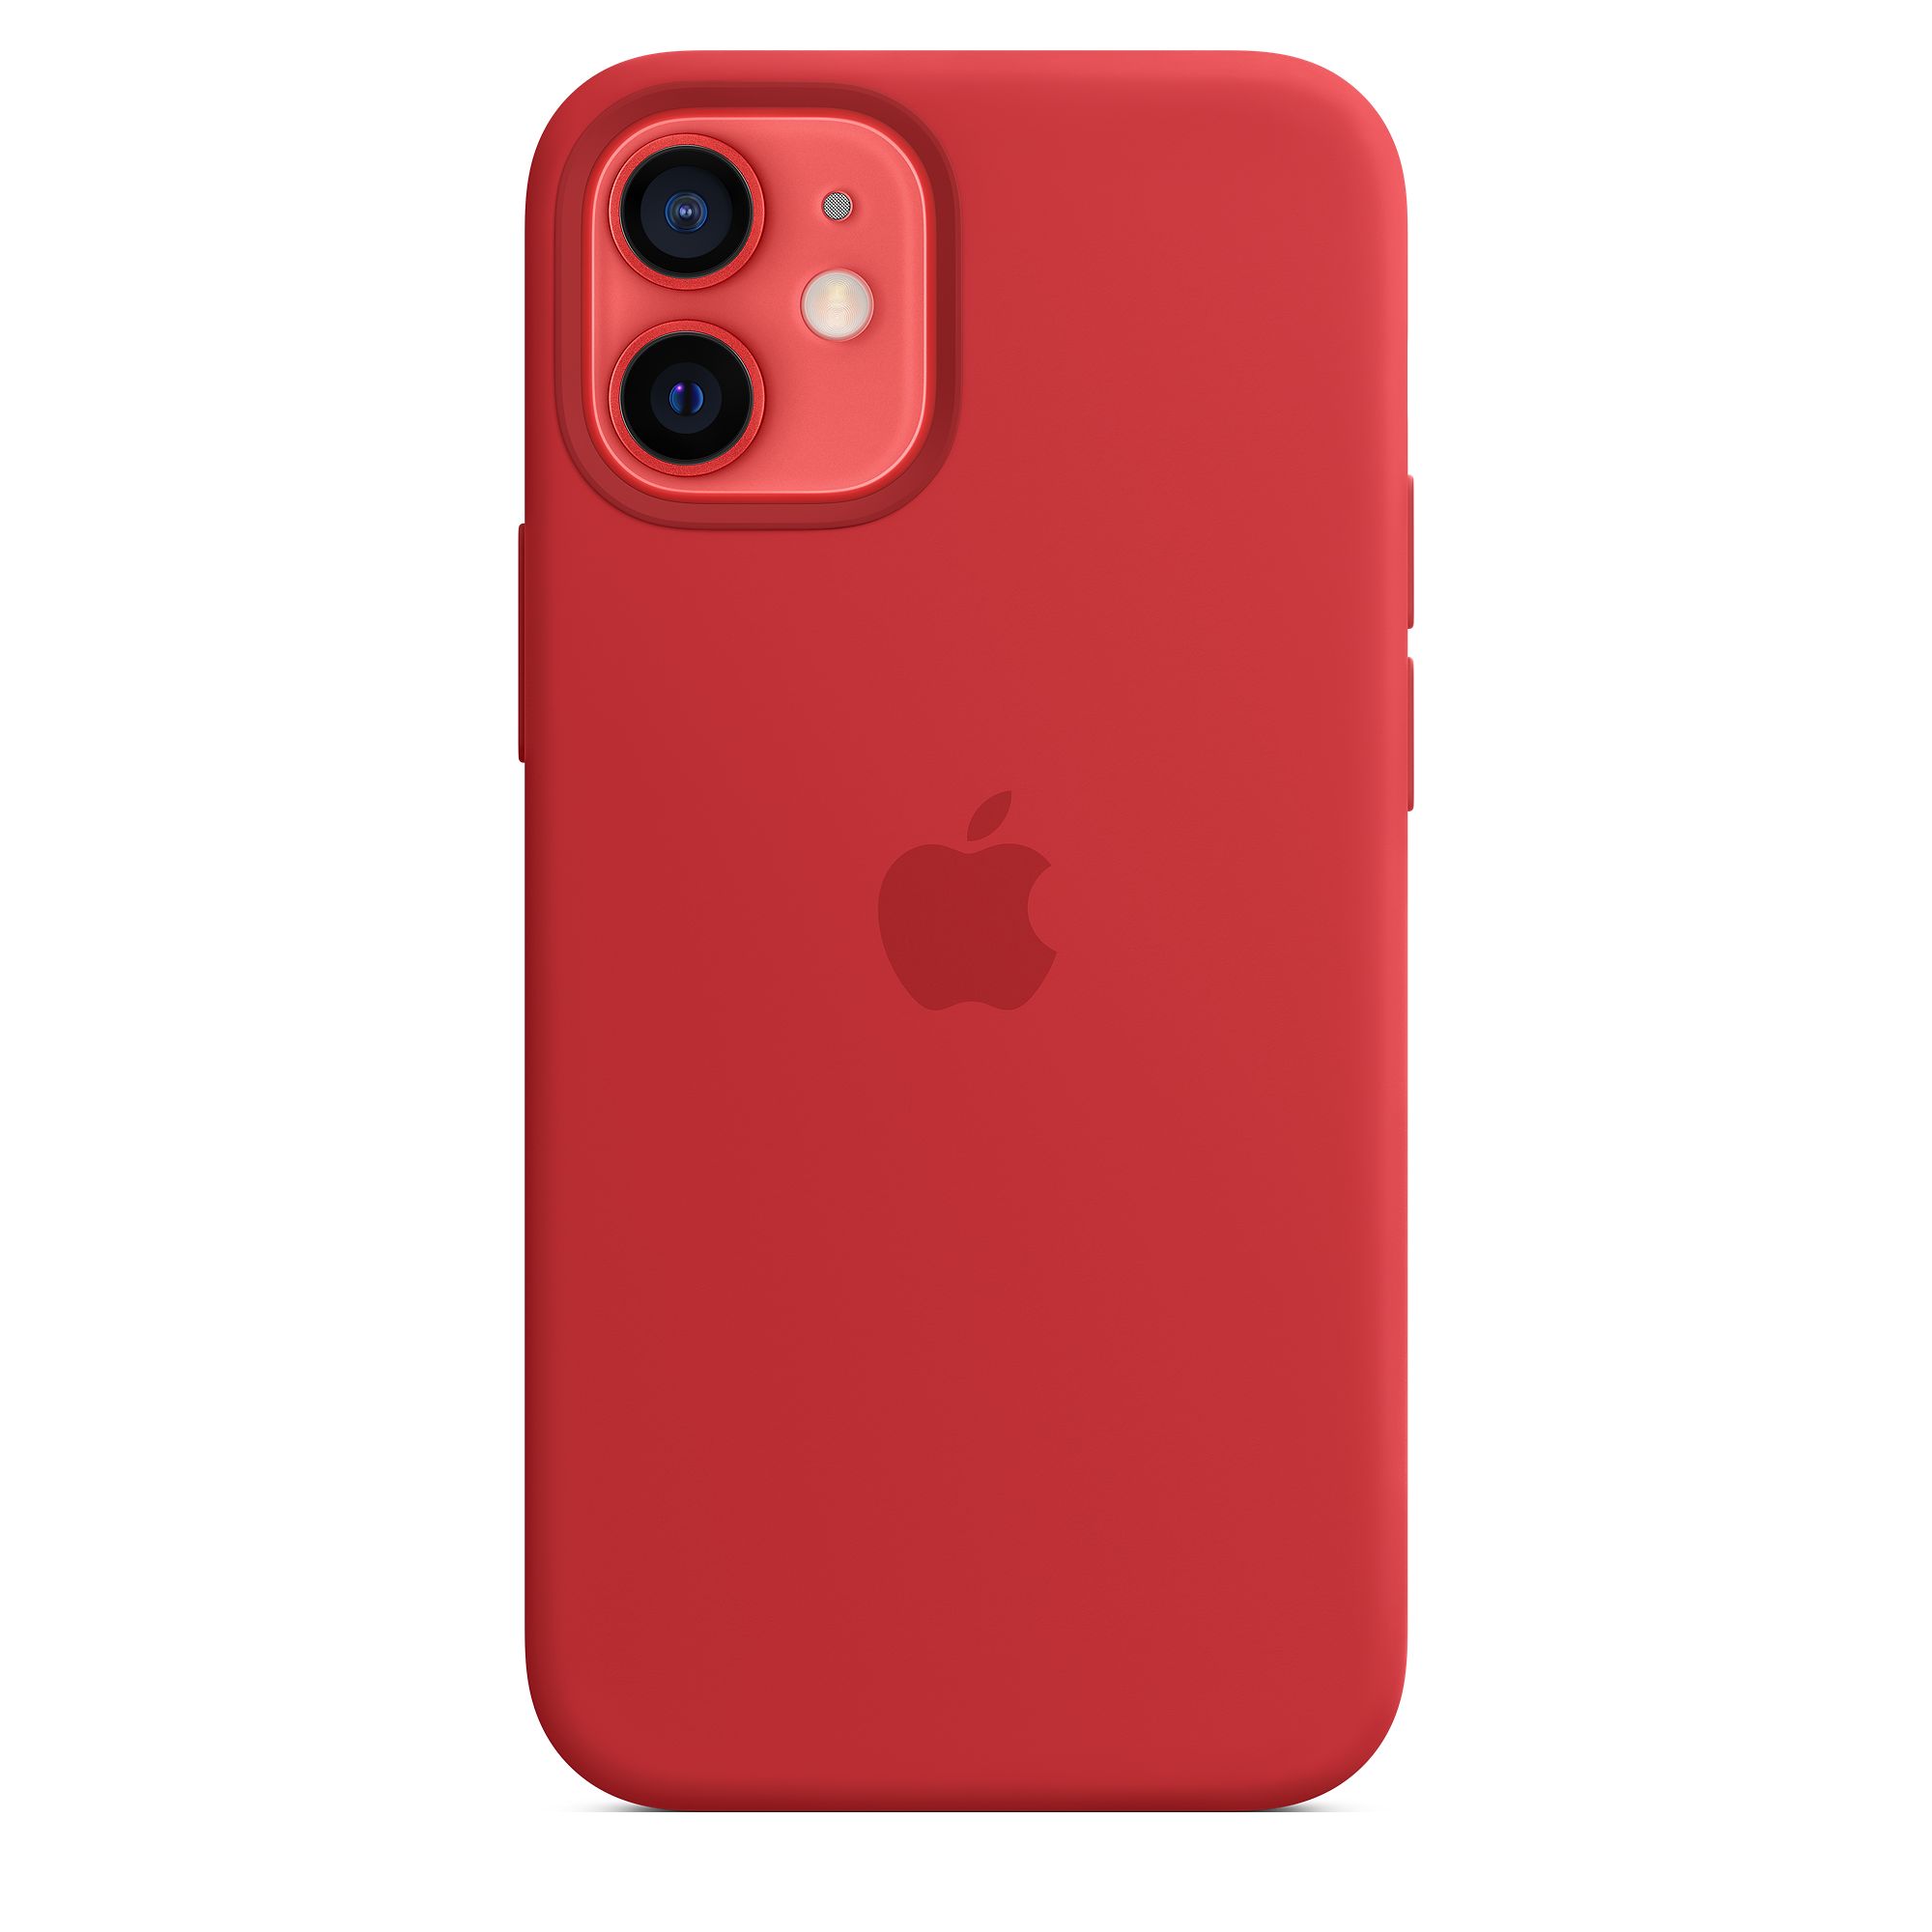 Чехол Apple MagSafe для iPhone 12 mini, силикон, красный (PRODUCT)RED